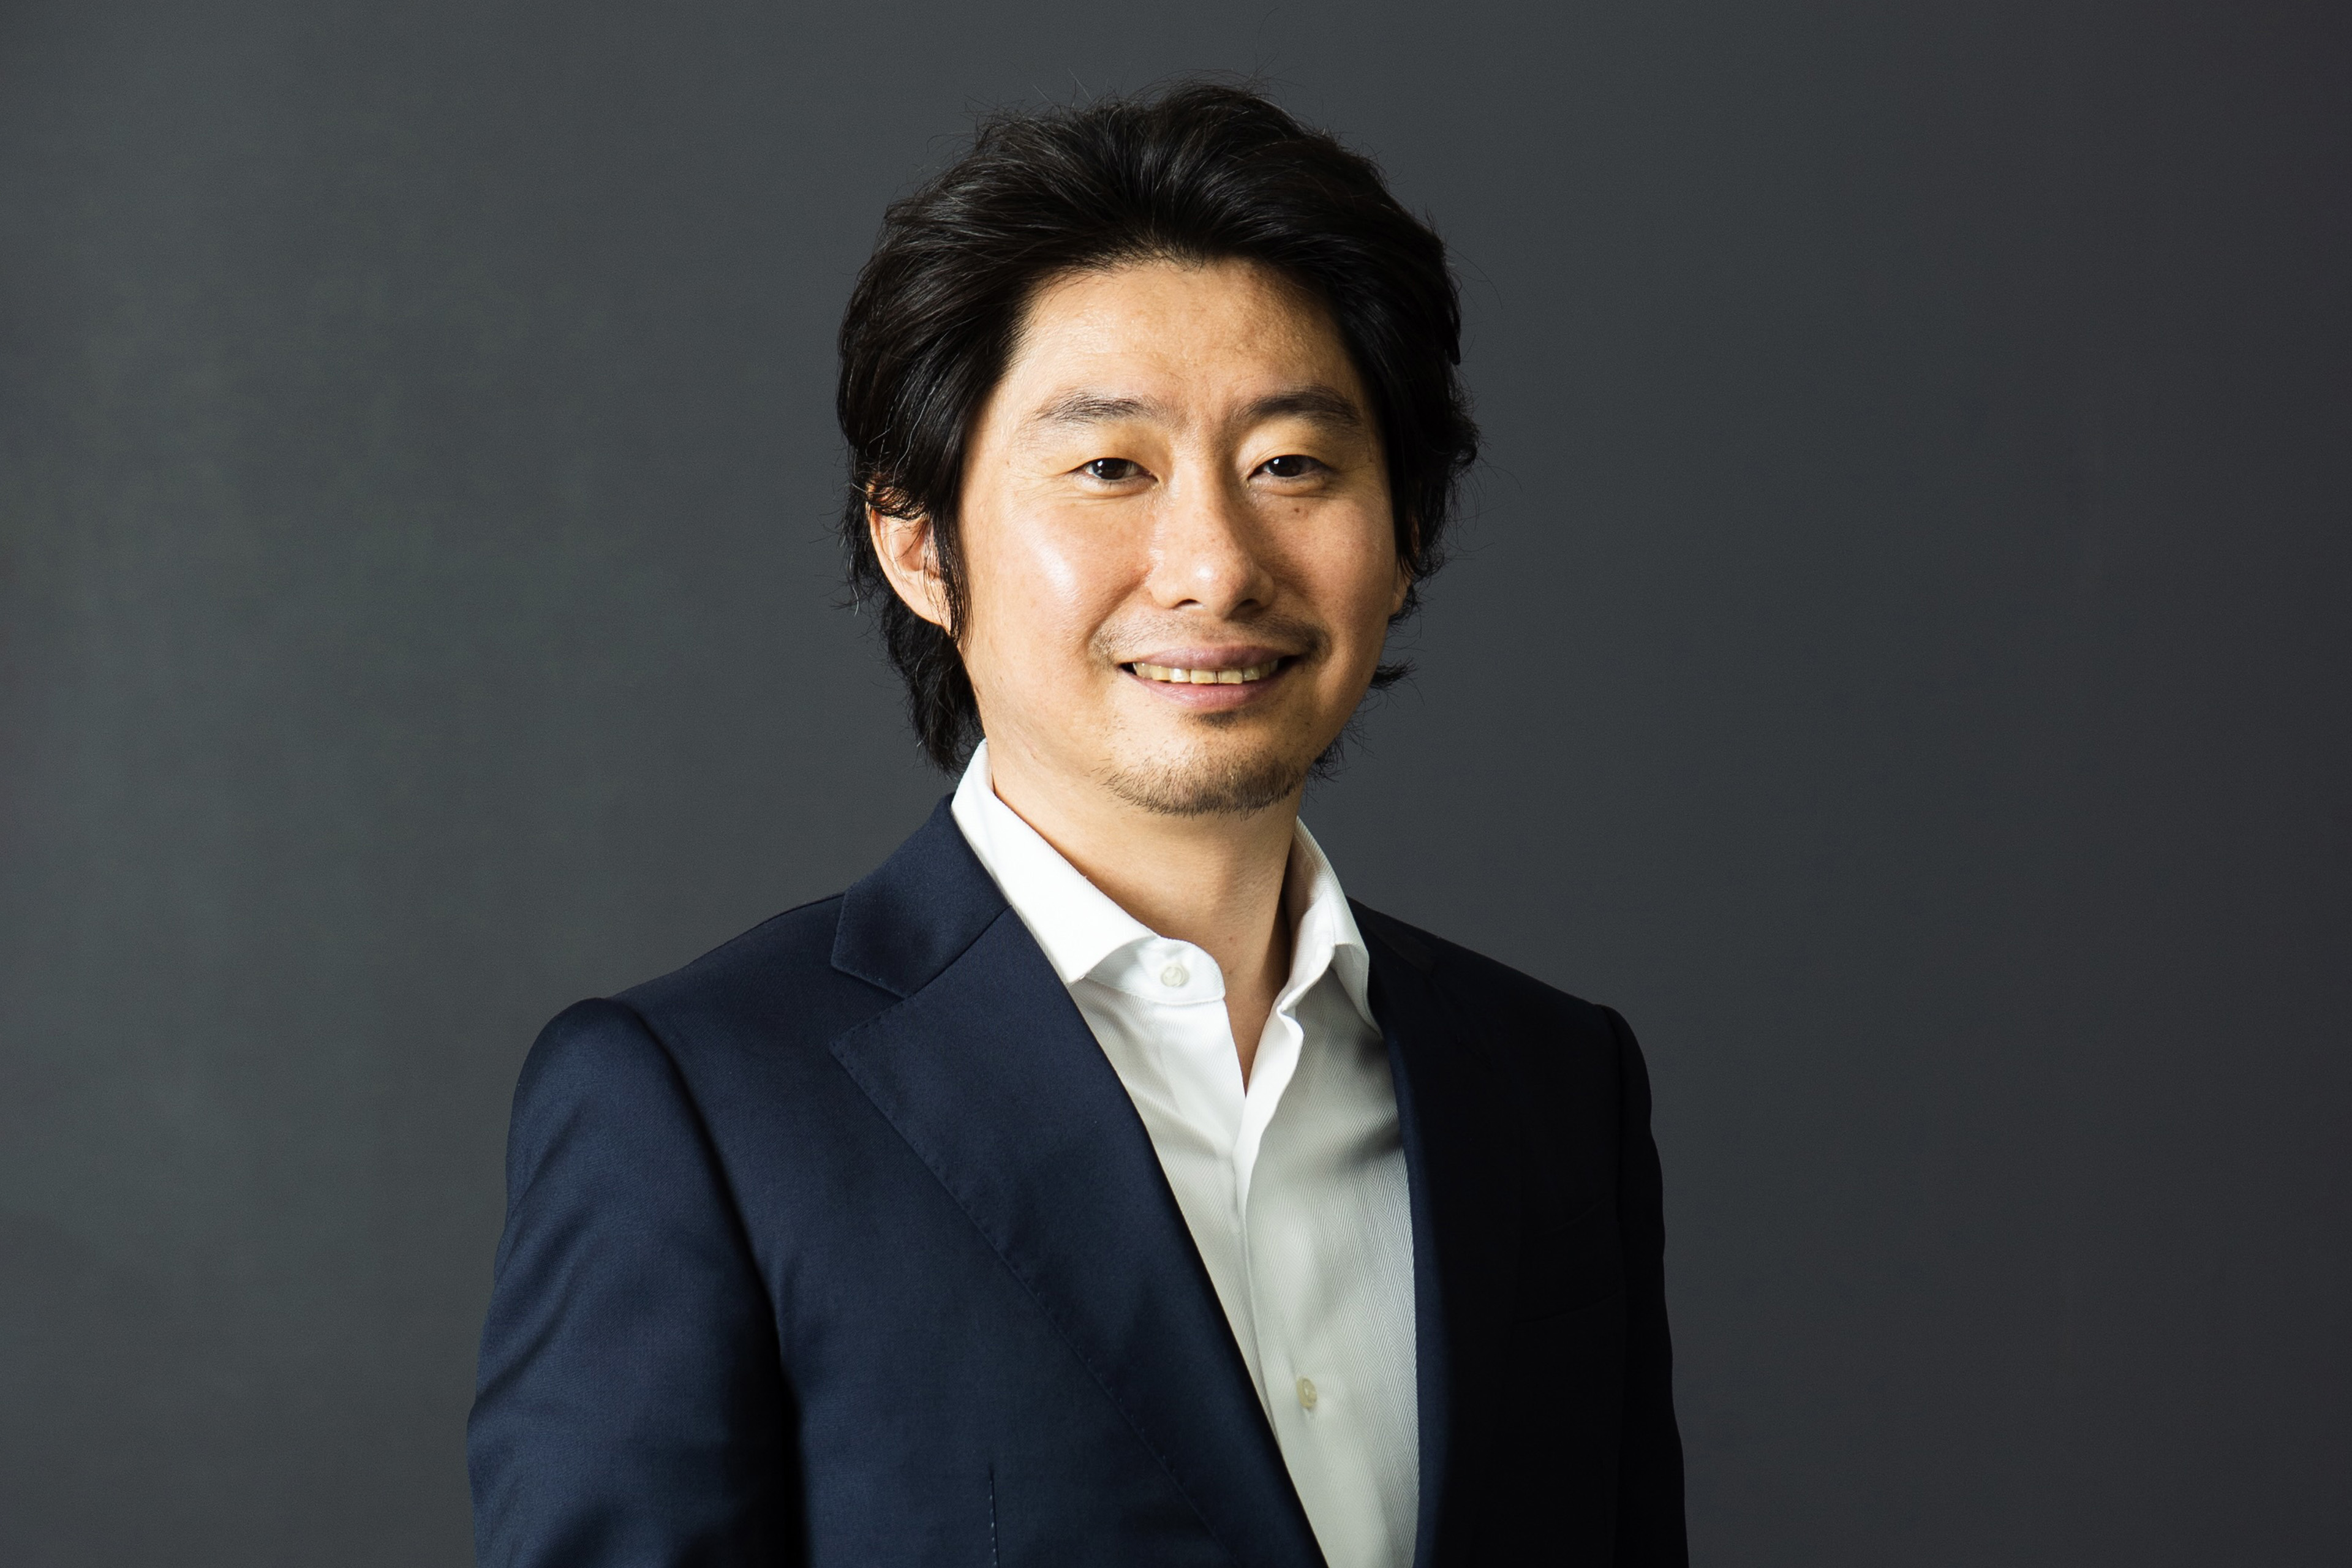 袴田 武史 氏	株式会社ispace　代表取締役 CEO & Founder